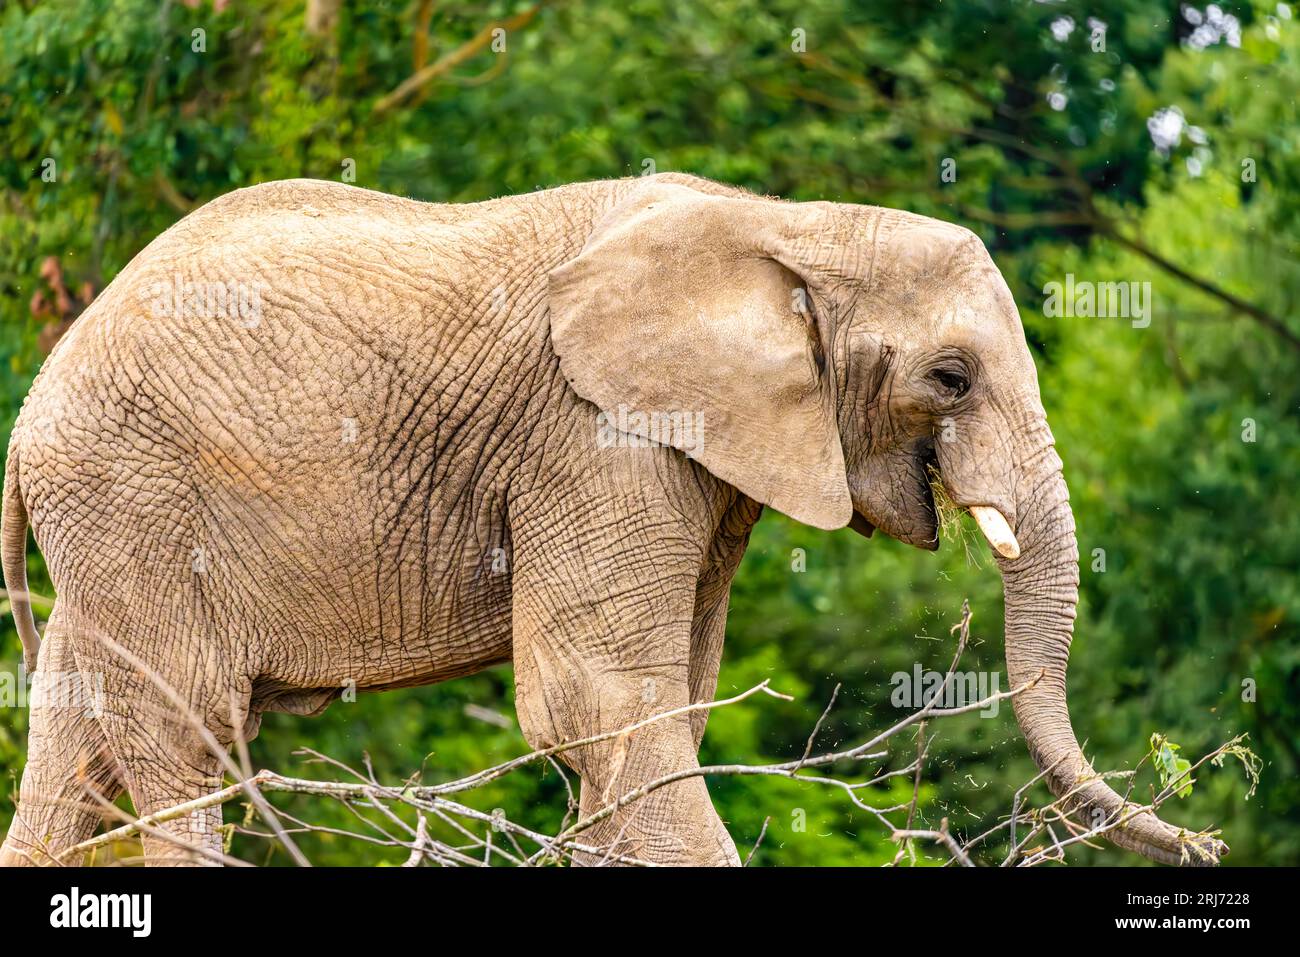 Ein großer majestätischer Elefant, der durch eine üppige Landschaft mit langen Stoßzähnen geht, die über sein Gesicht gelegt sind Stockfoto